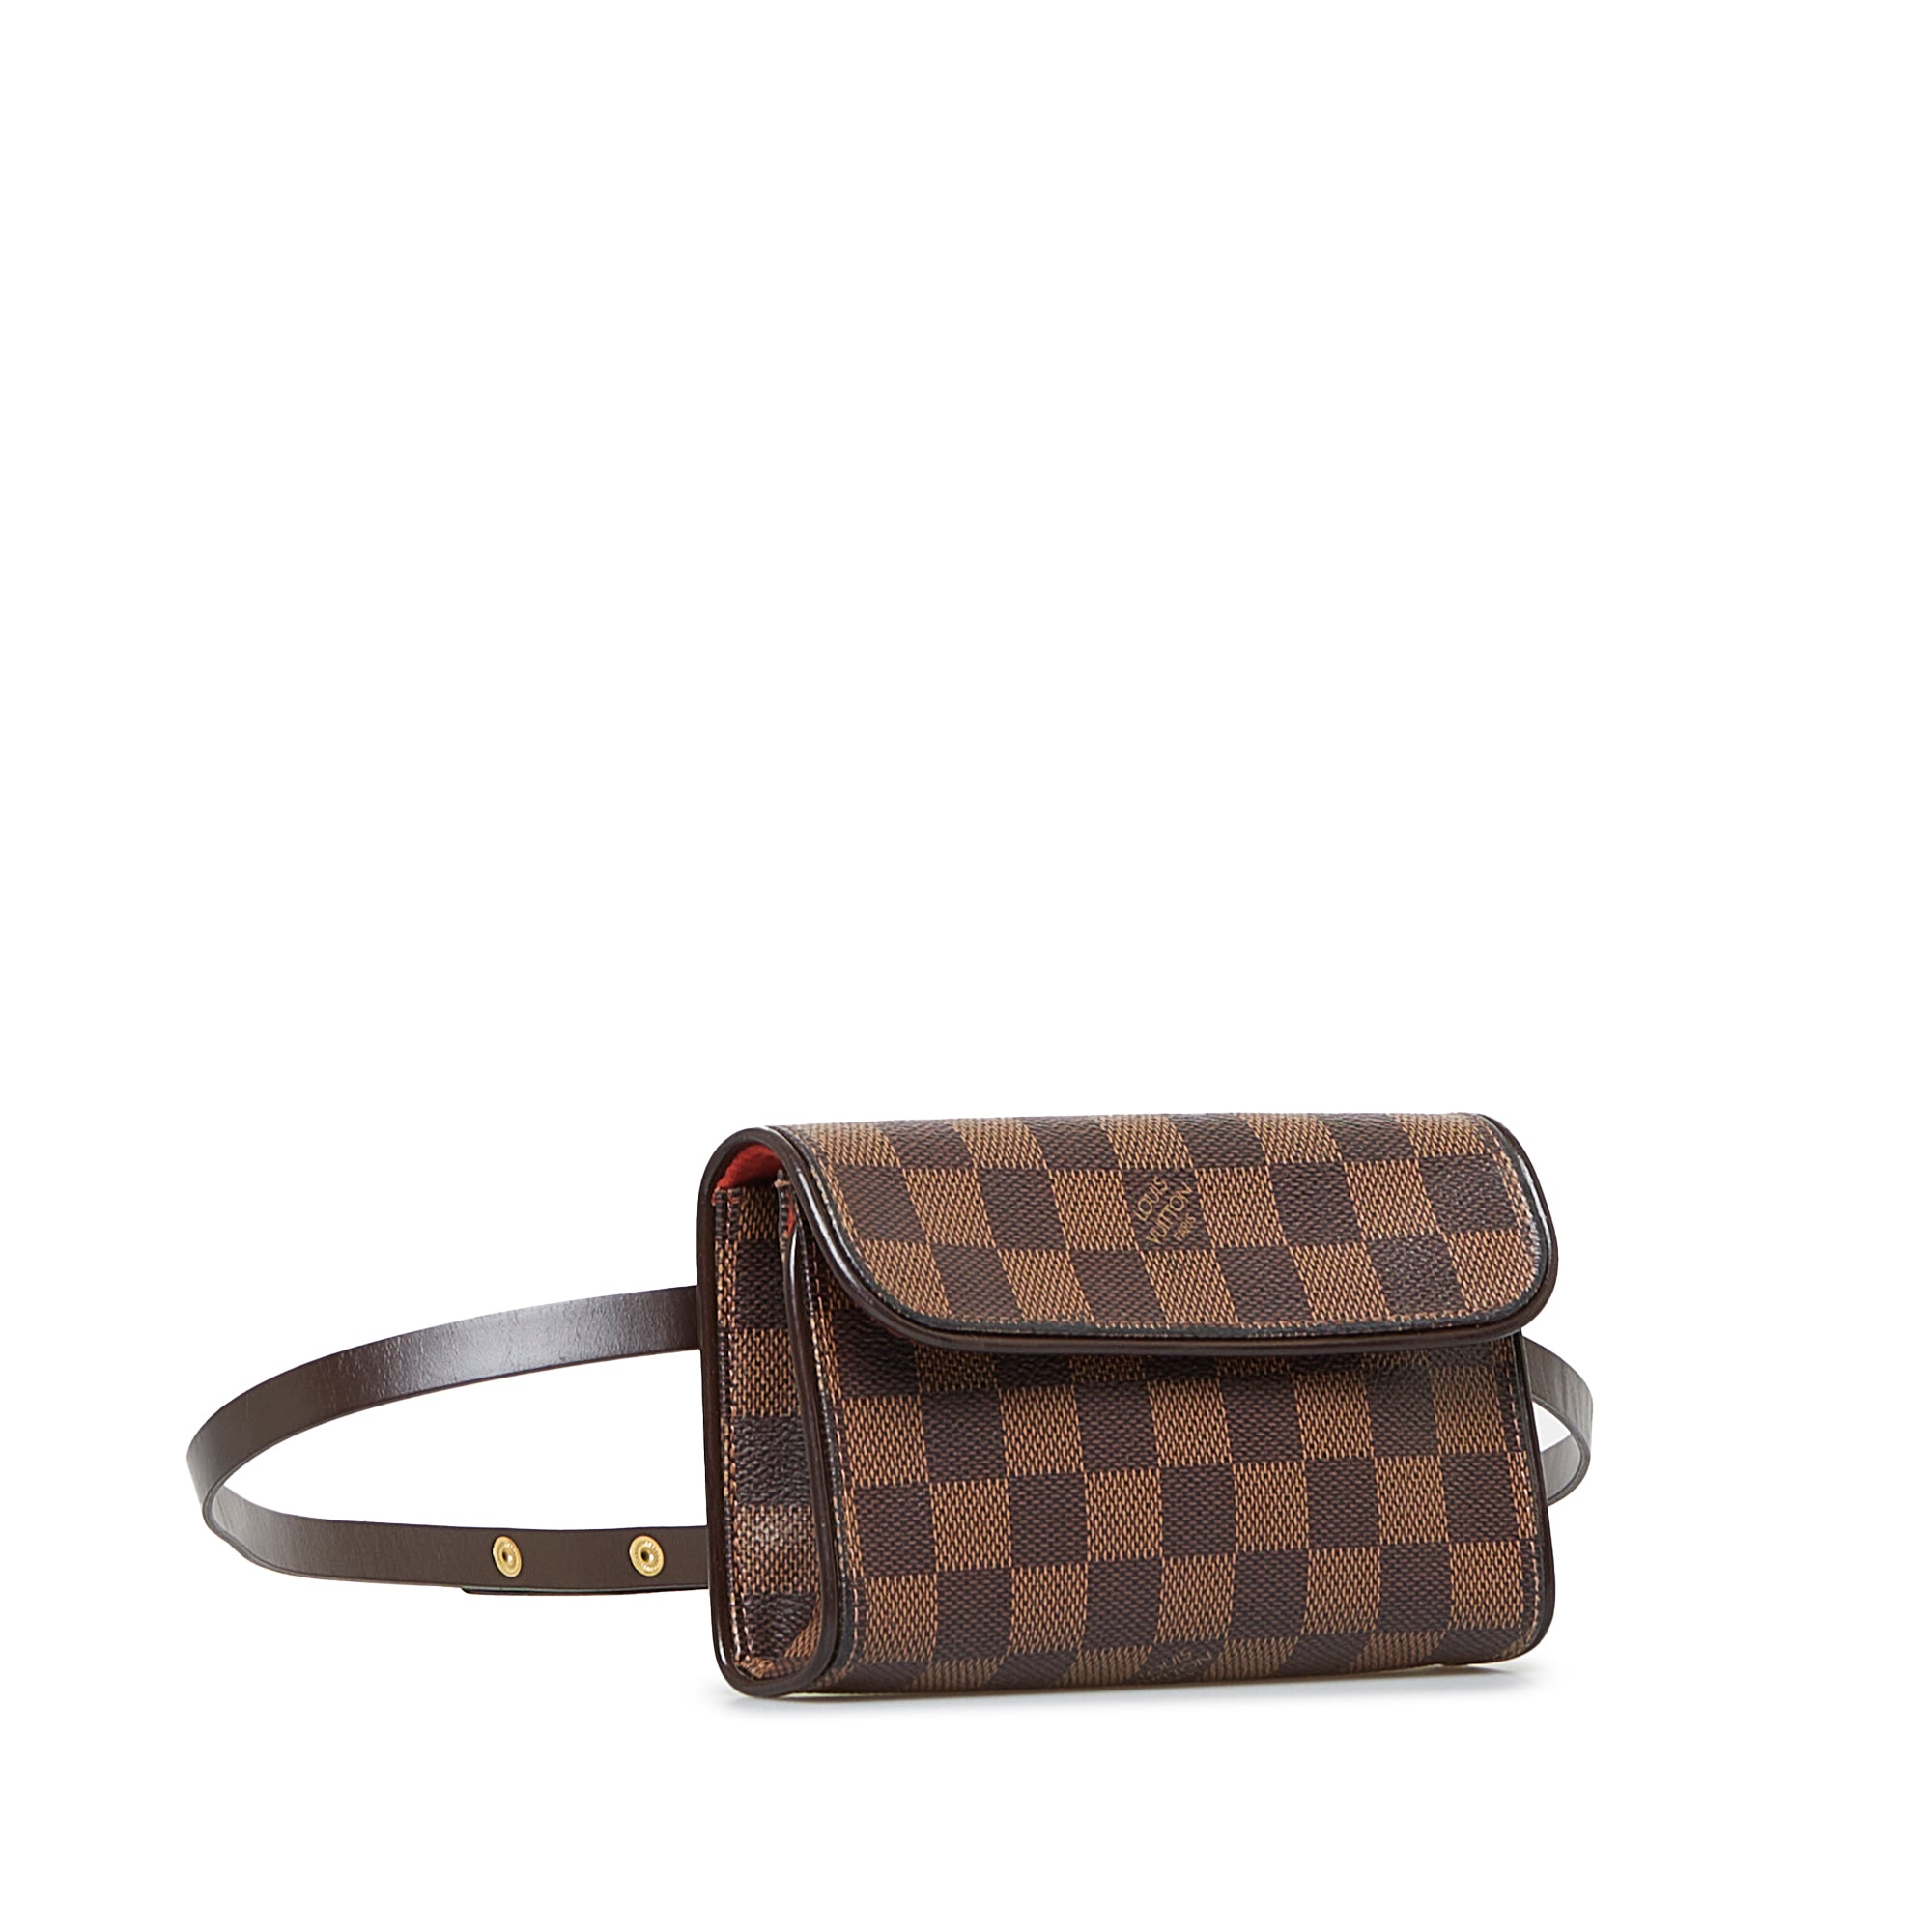 Louis Vuitton Body Bag Pochette Florentine Brown Beige Monogram M51855 S  Size Canvas Nume FL0090 LB0070 LOUIS VUITTON Belt Waist Pouch Flap